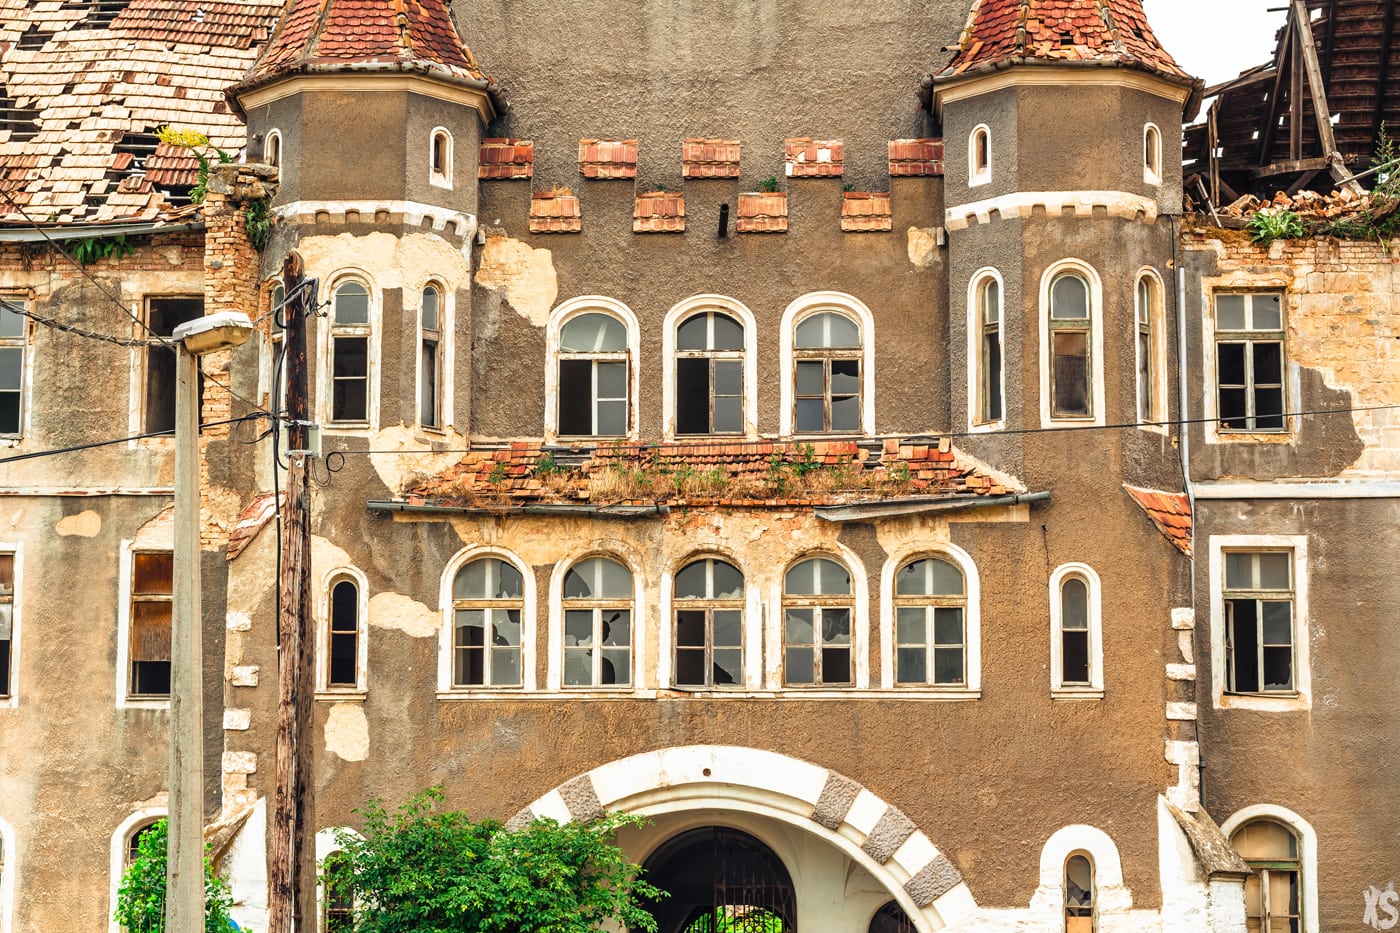 Château abandonné situé en Hongrie